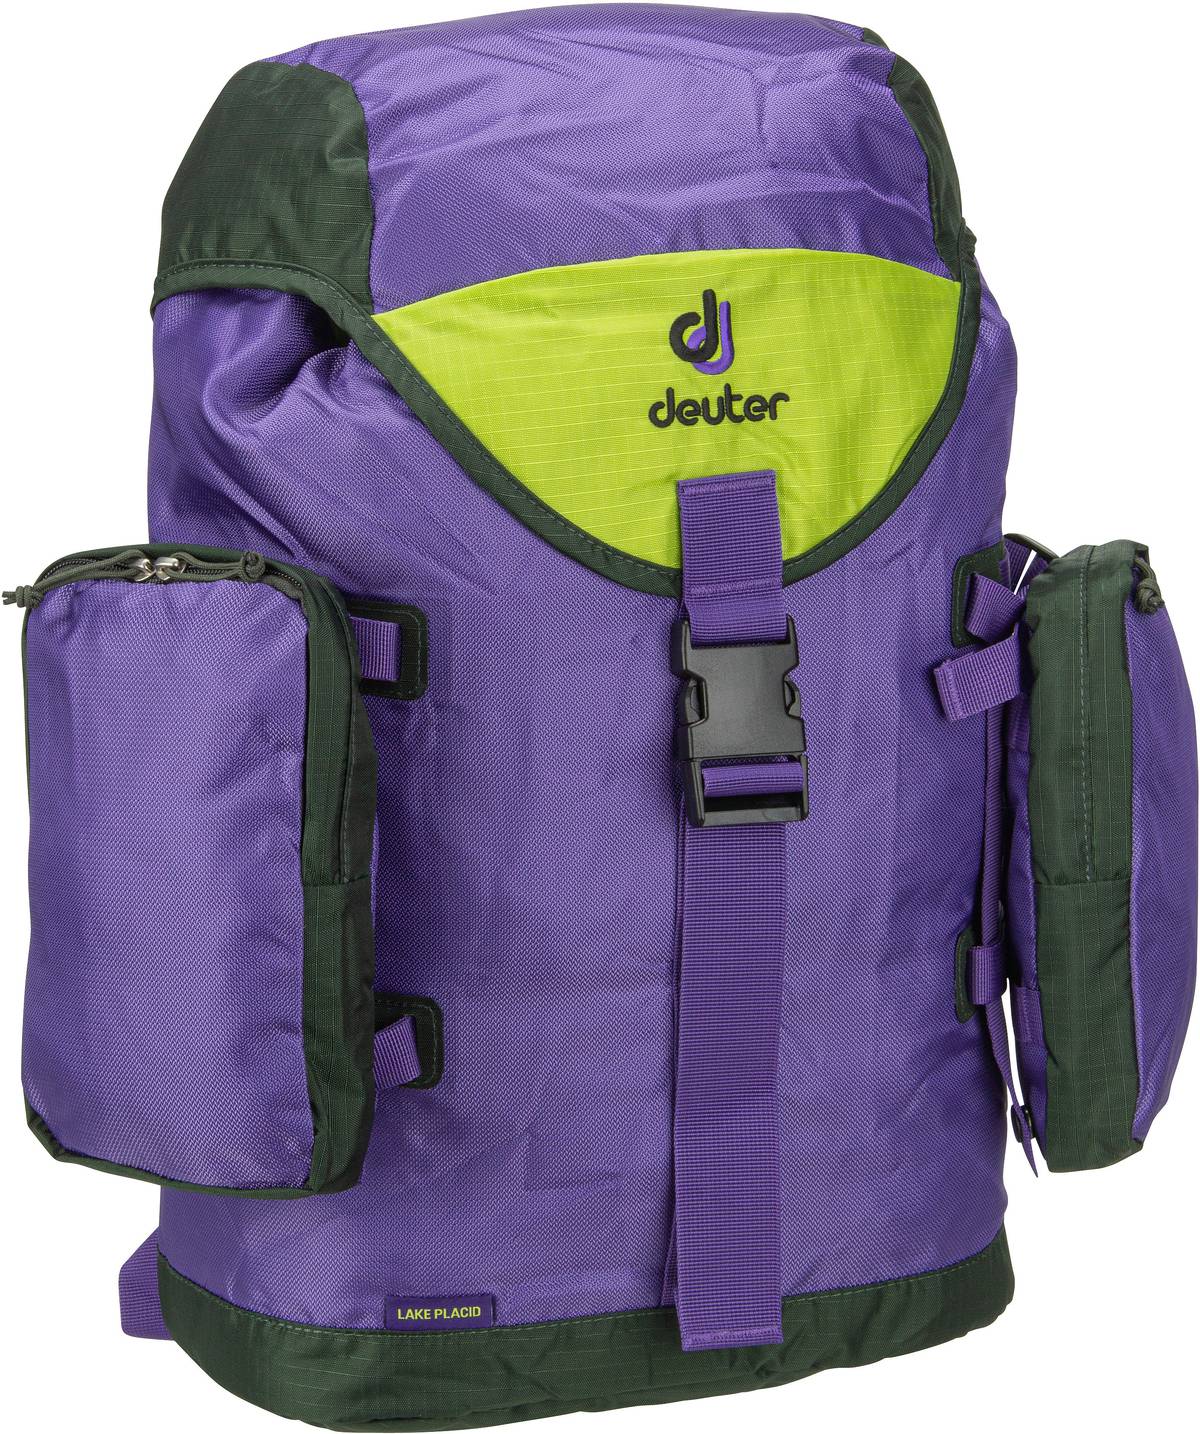 Deuter Lake Placid  in Violett (27 Liter), Rucksack / Backpack